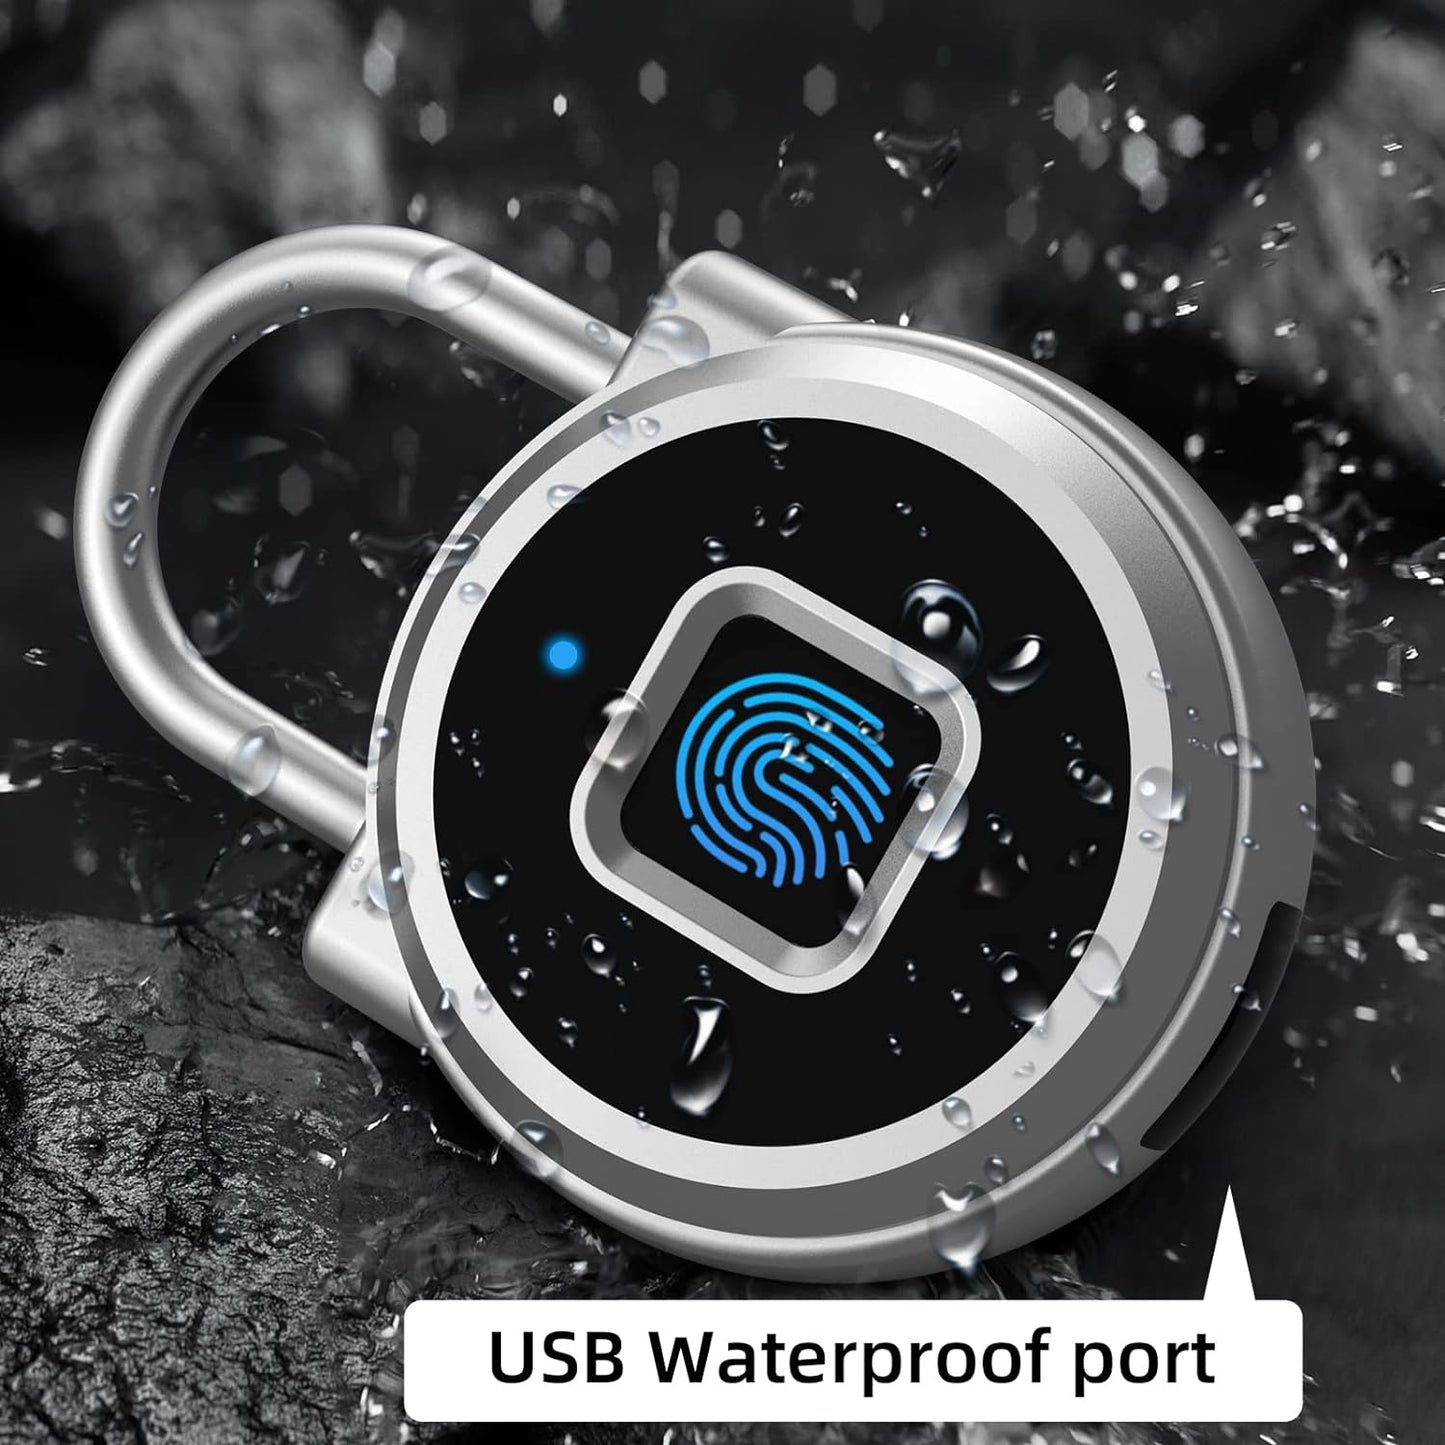 Smart Fingerprint Lock